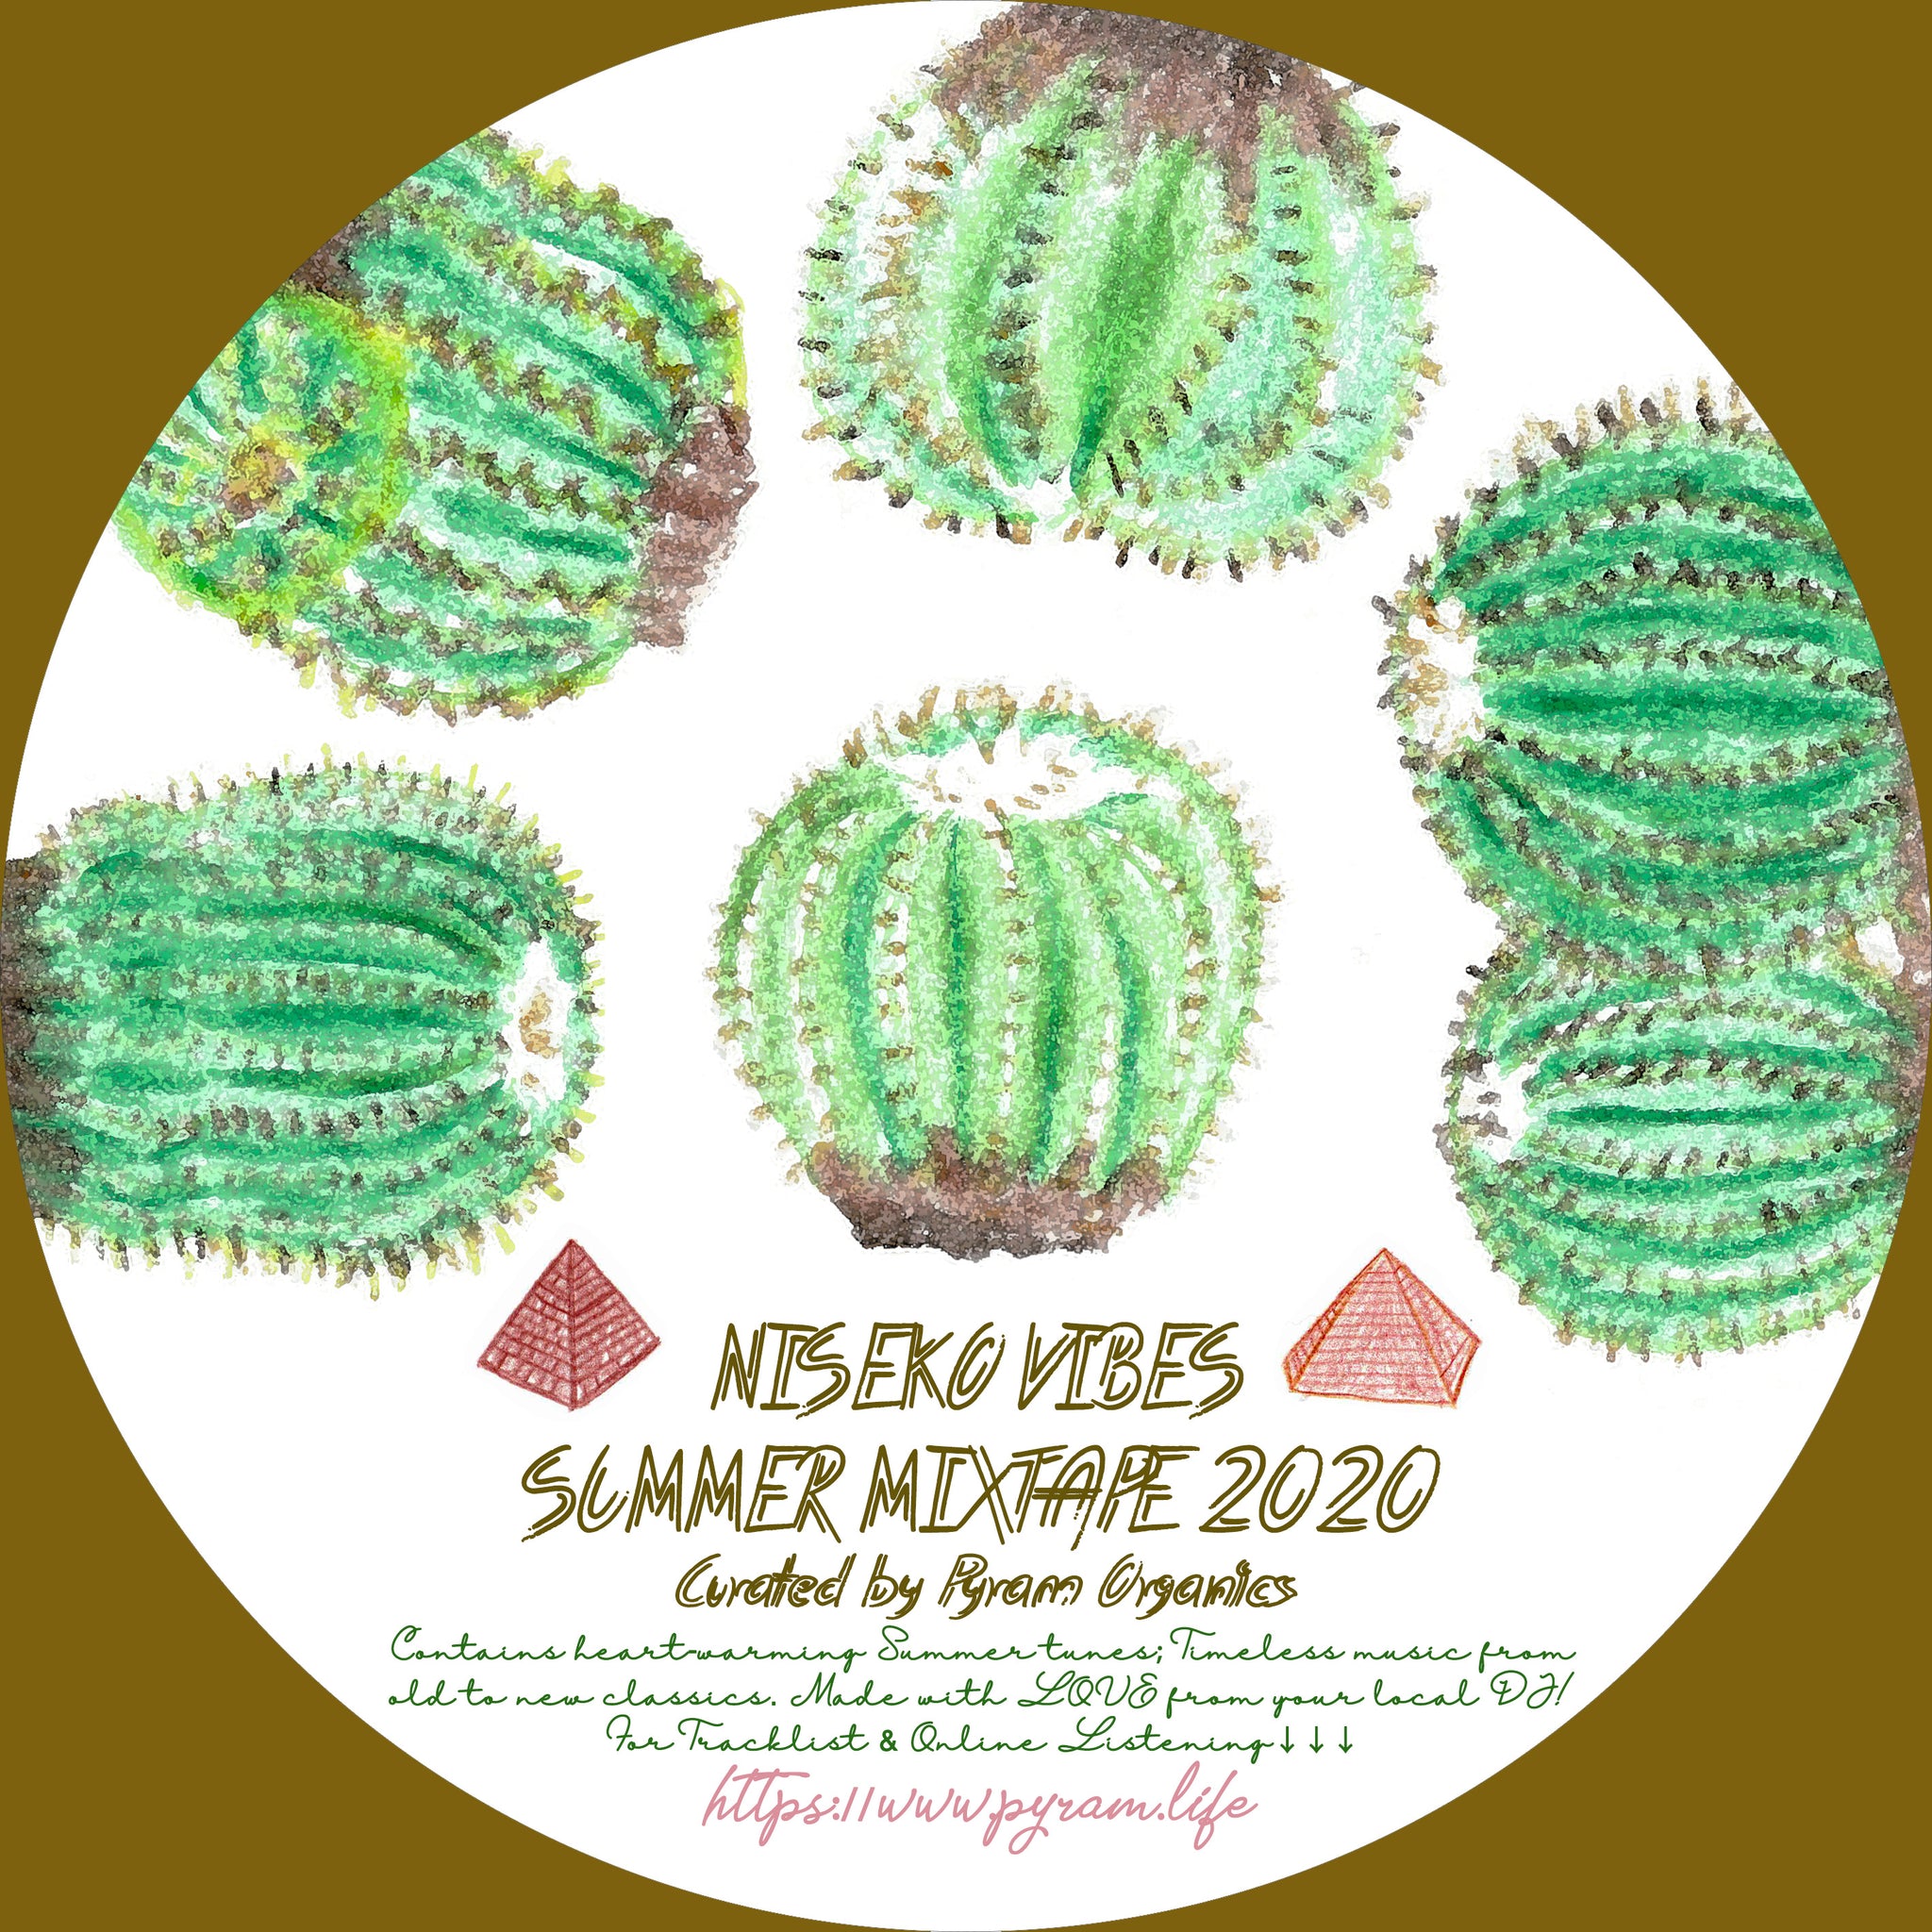 Niseko Vibes - Summer mixtape 2020